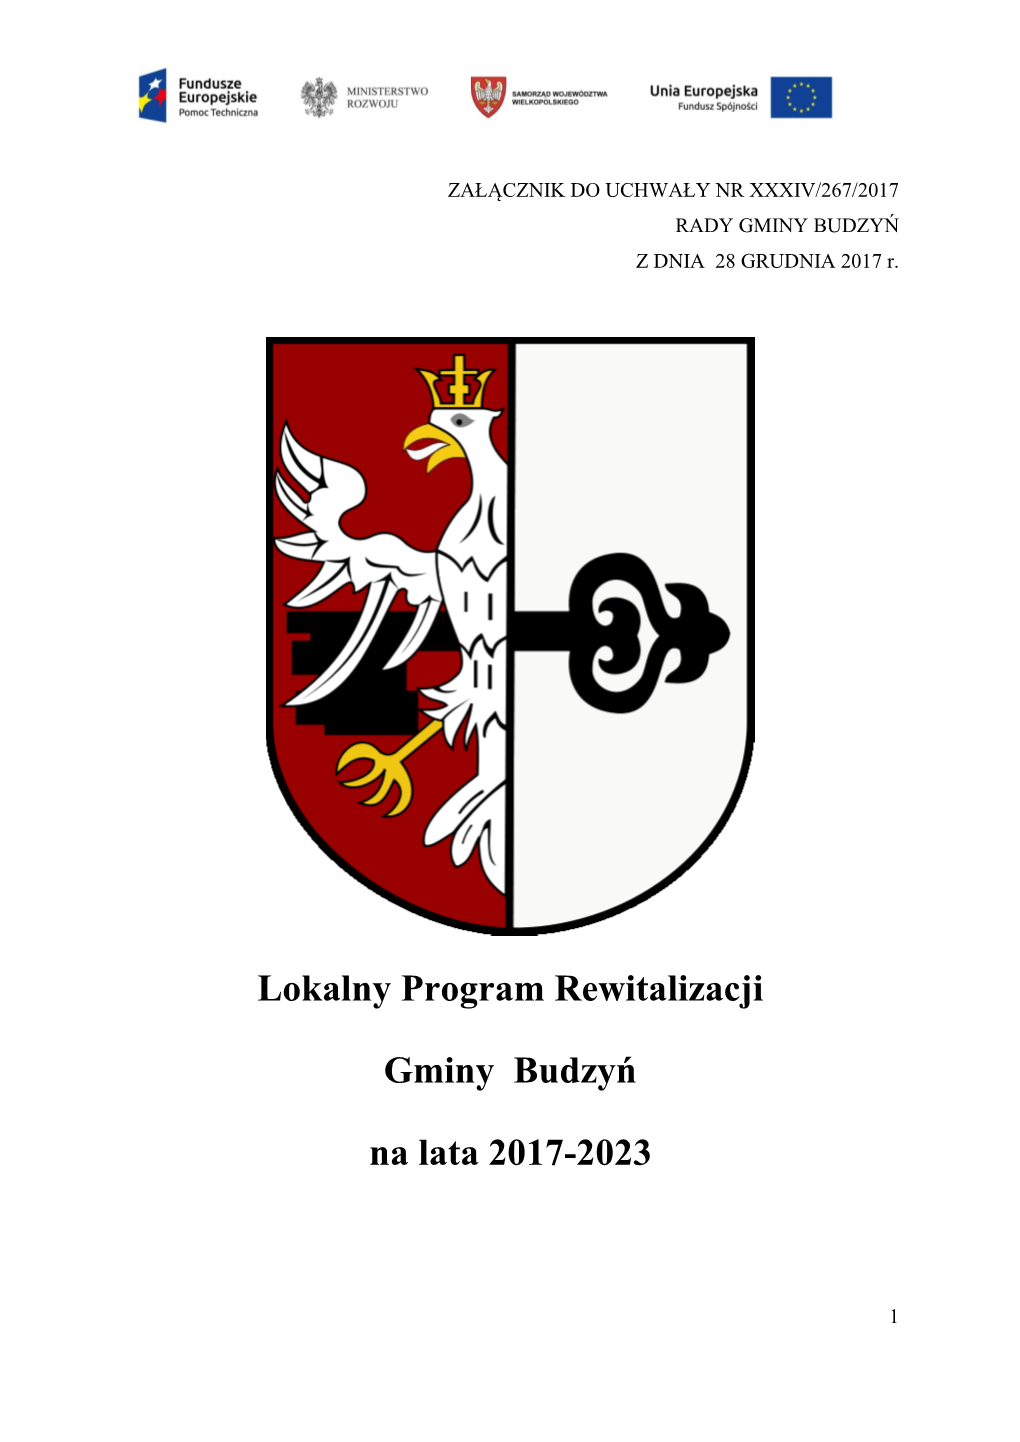 Lokalny Program Rewitalizacji Gminy Budzyń Na Lata 2017-2023